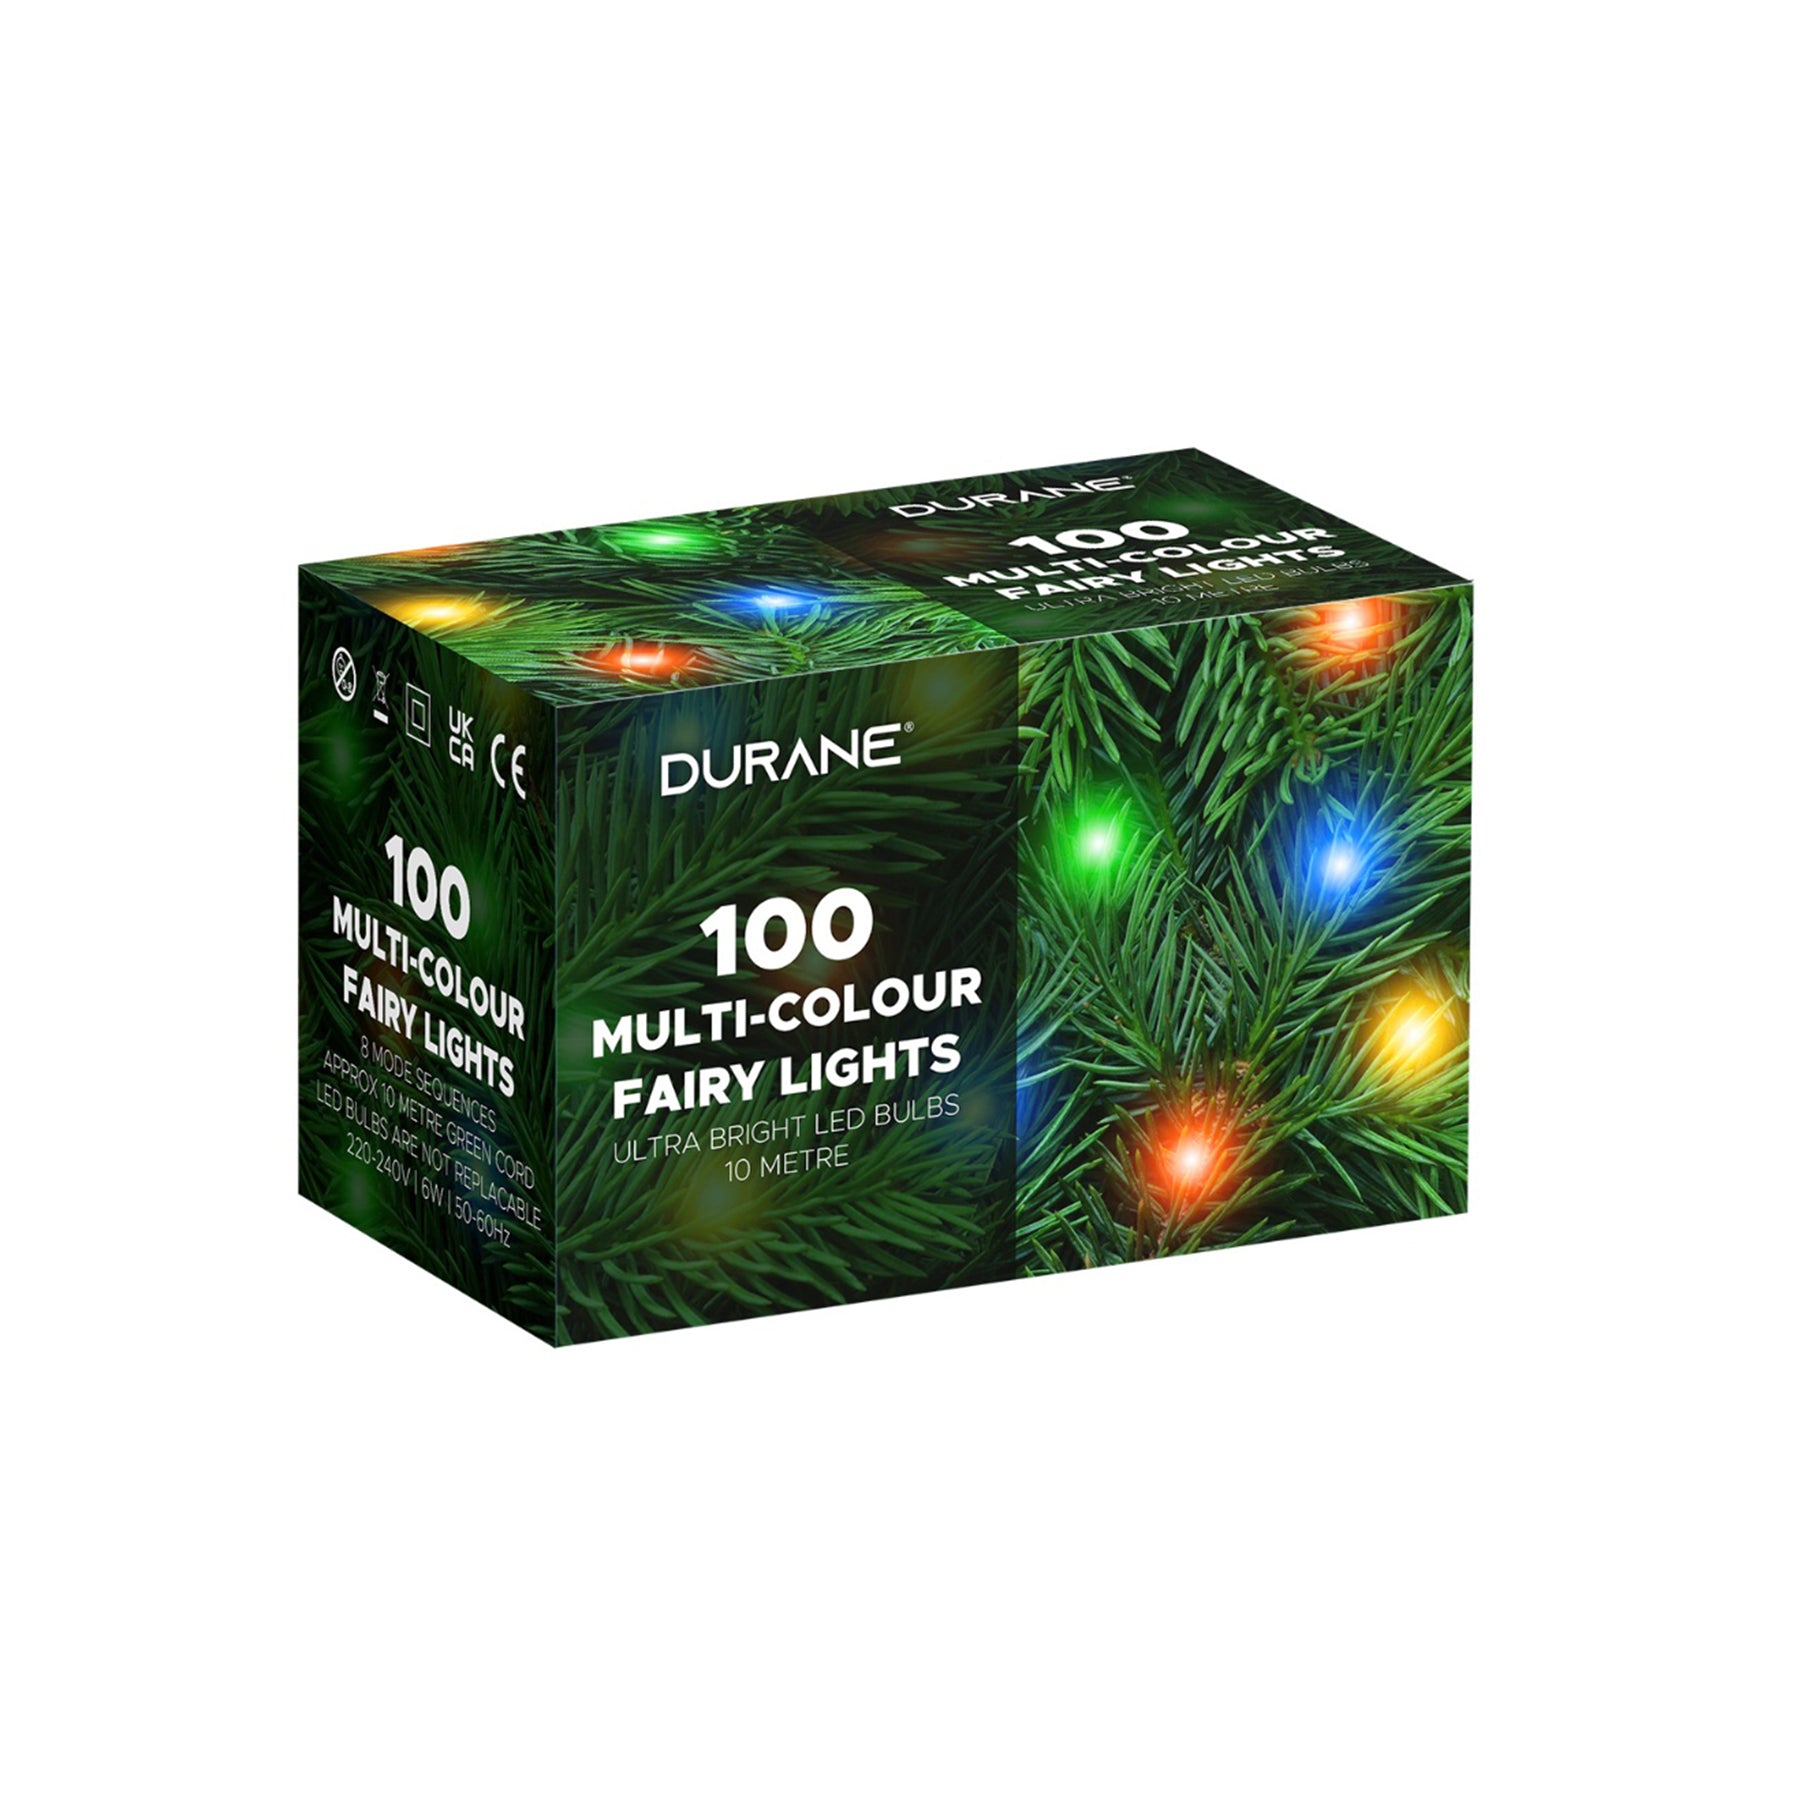 Multi-Color Fairy Lights with LED 100 Bulbs - 10 Mtr